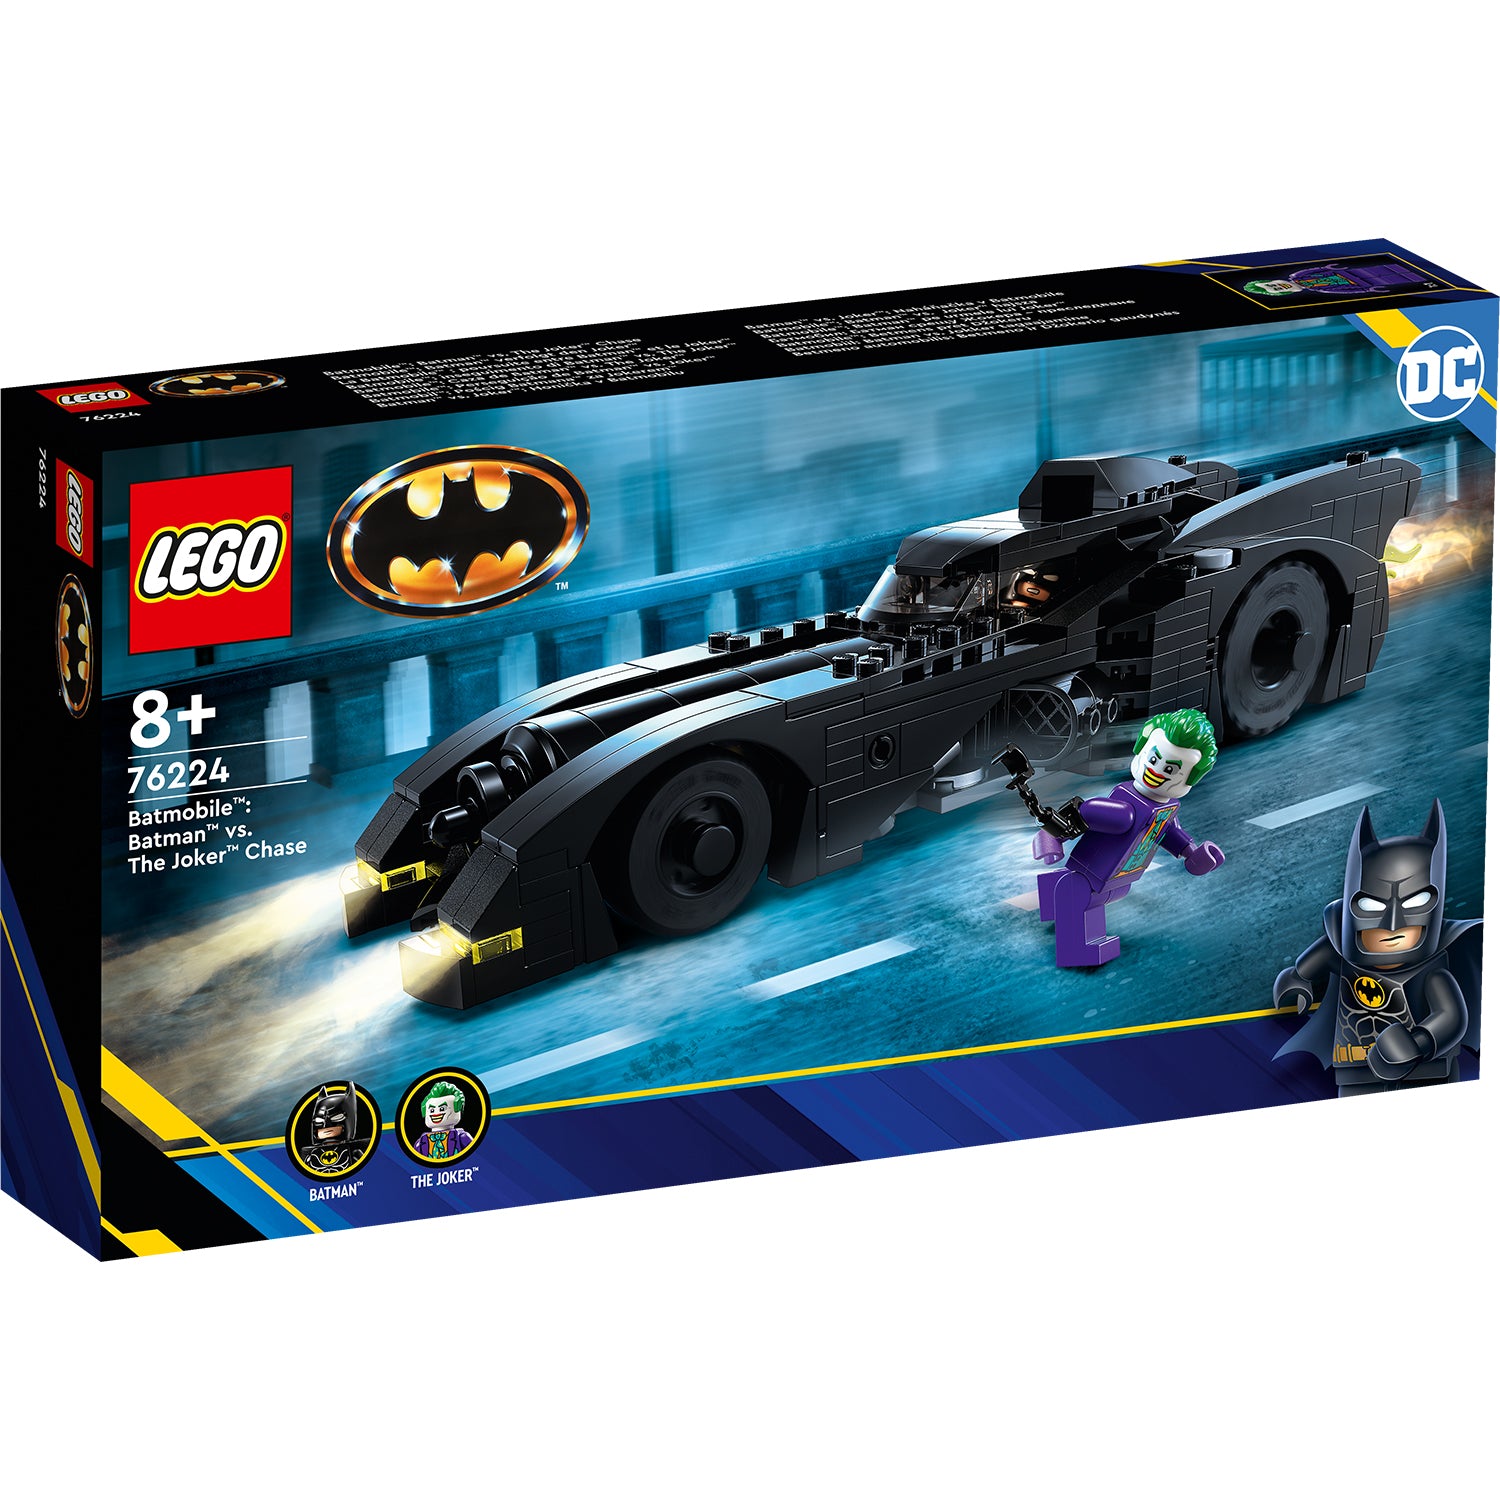 LEGO 76224 Batmobile: Batman vs. The Joker Chase revealed